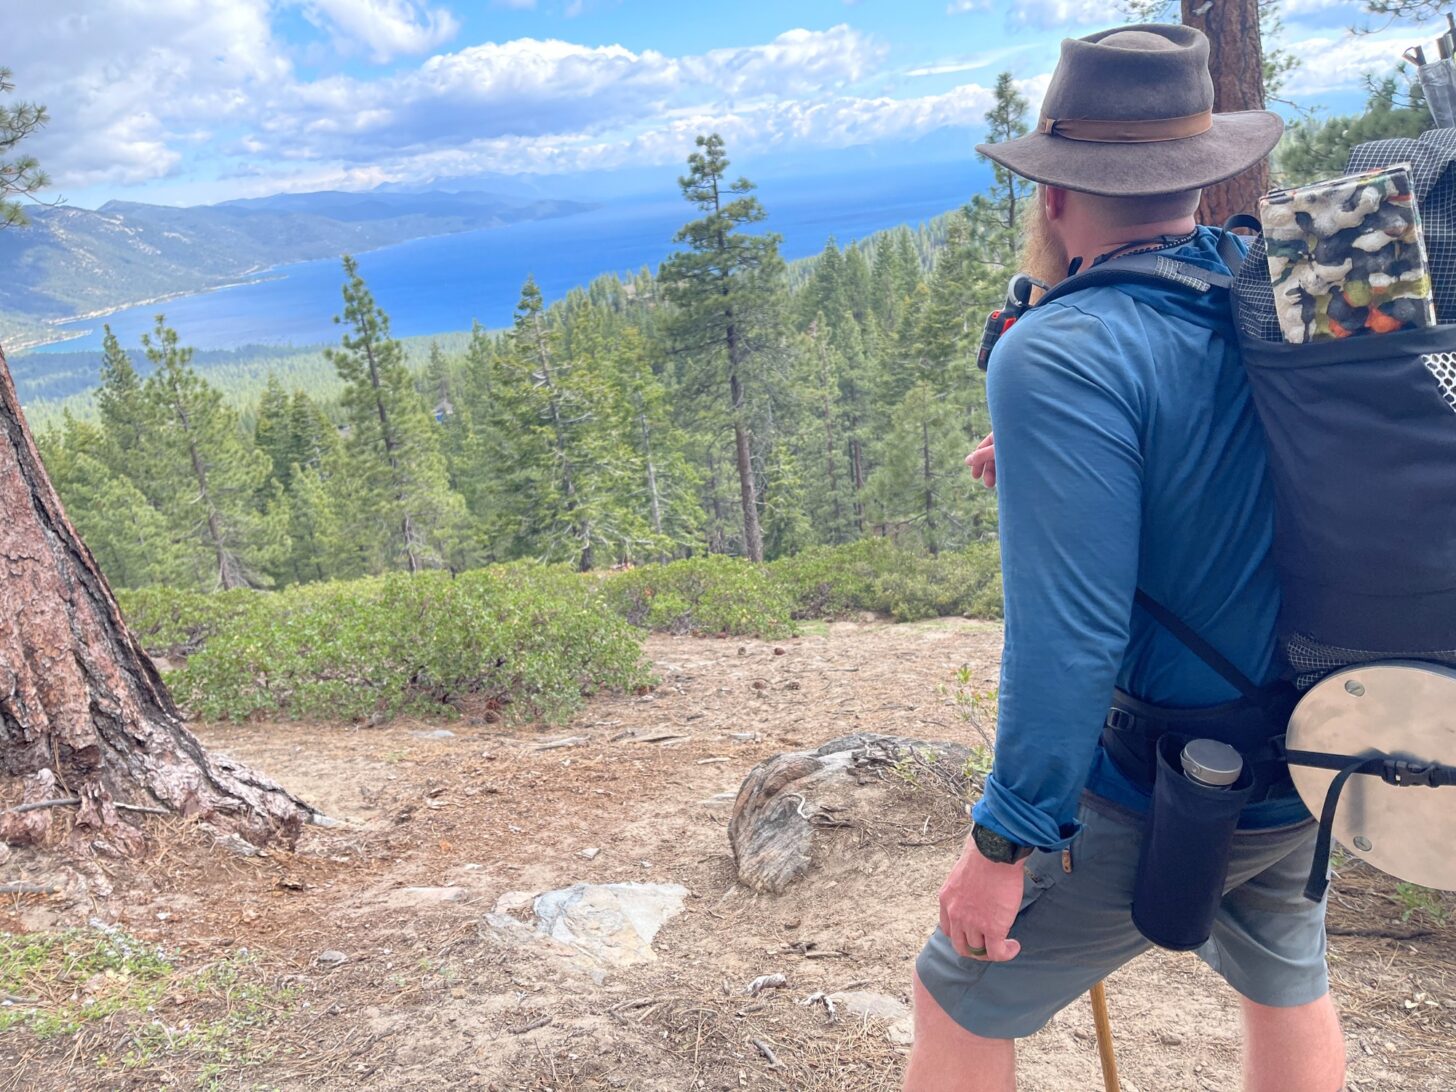 一个背着背包的男人站在那里，眺望着蓝色的湖泊和树木。在他腰部的一个小袋子里可以看到瓦戈瓶。